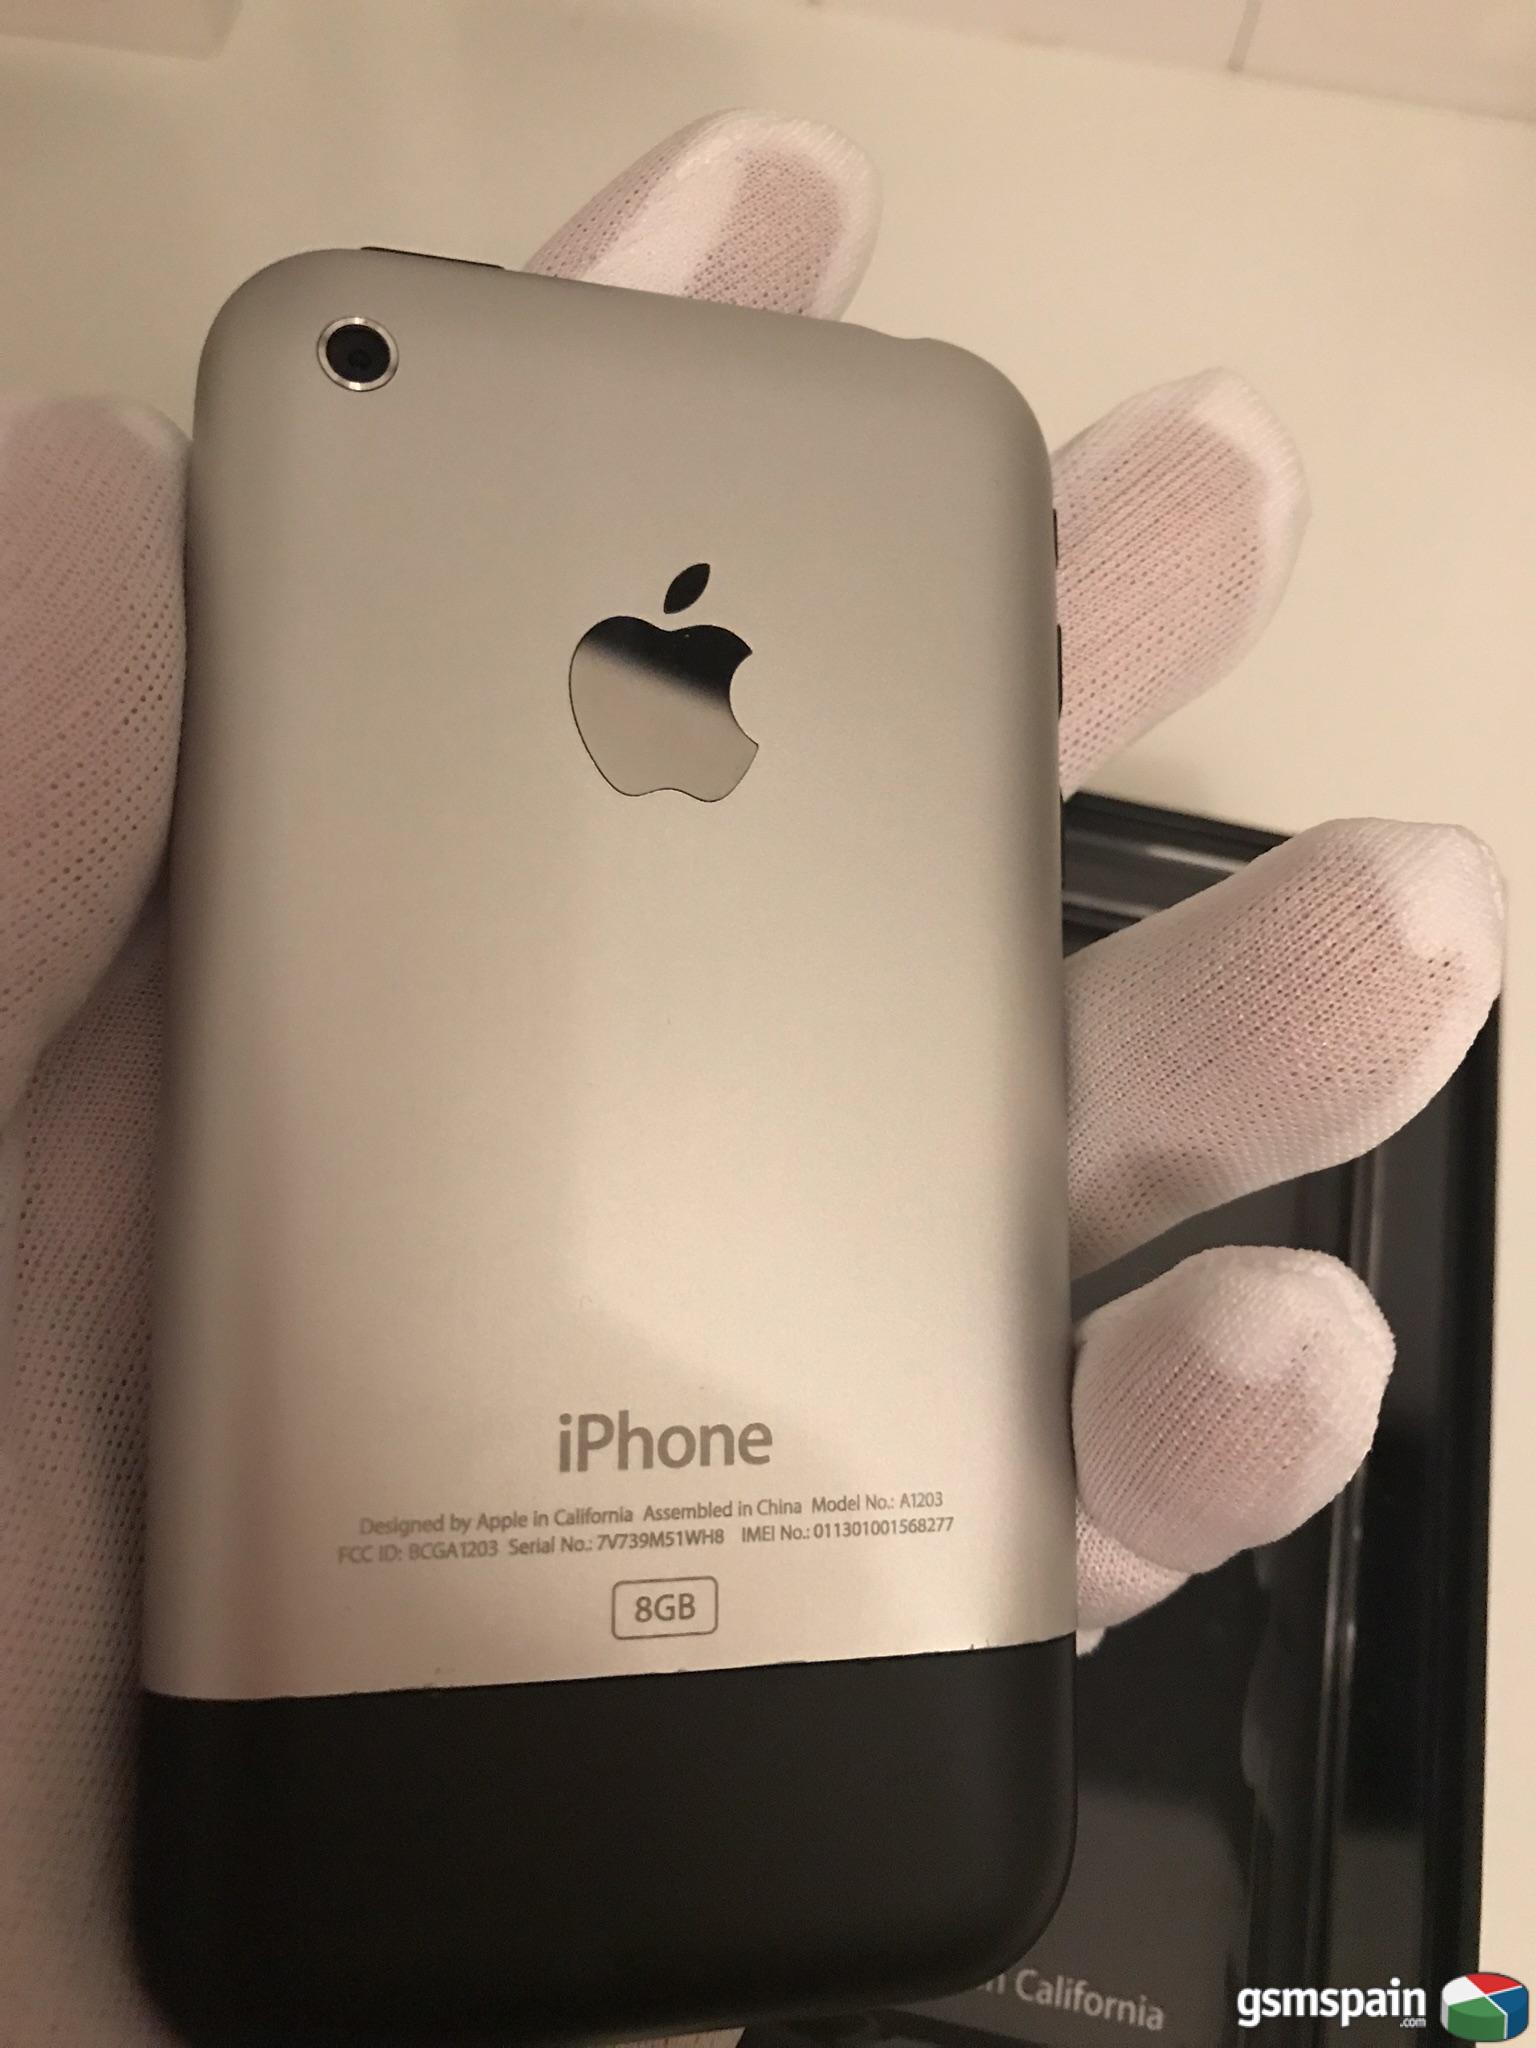 [VENDO] iPhone 2G (since 2007) - Sin activar - Estado impecable (Solo coleccionistas)